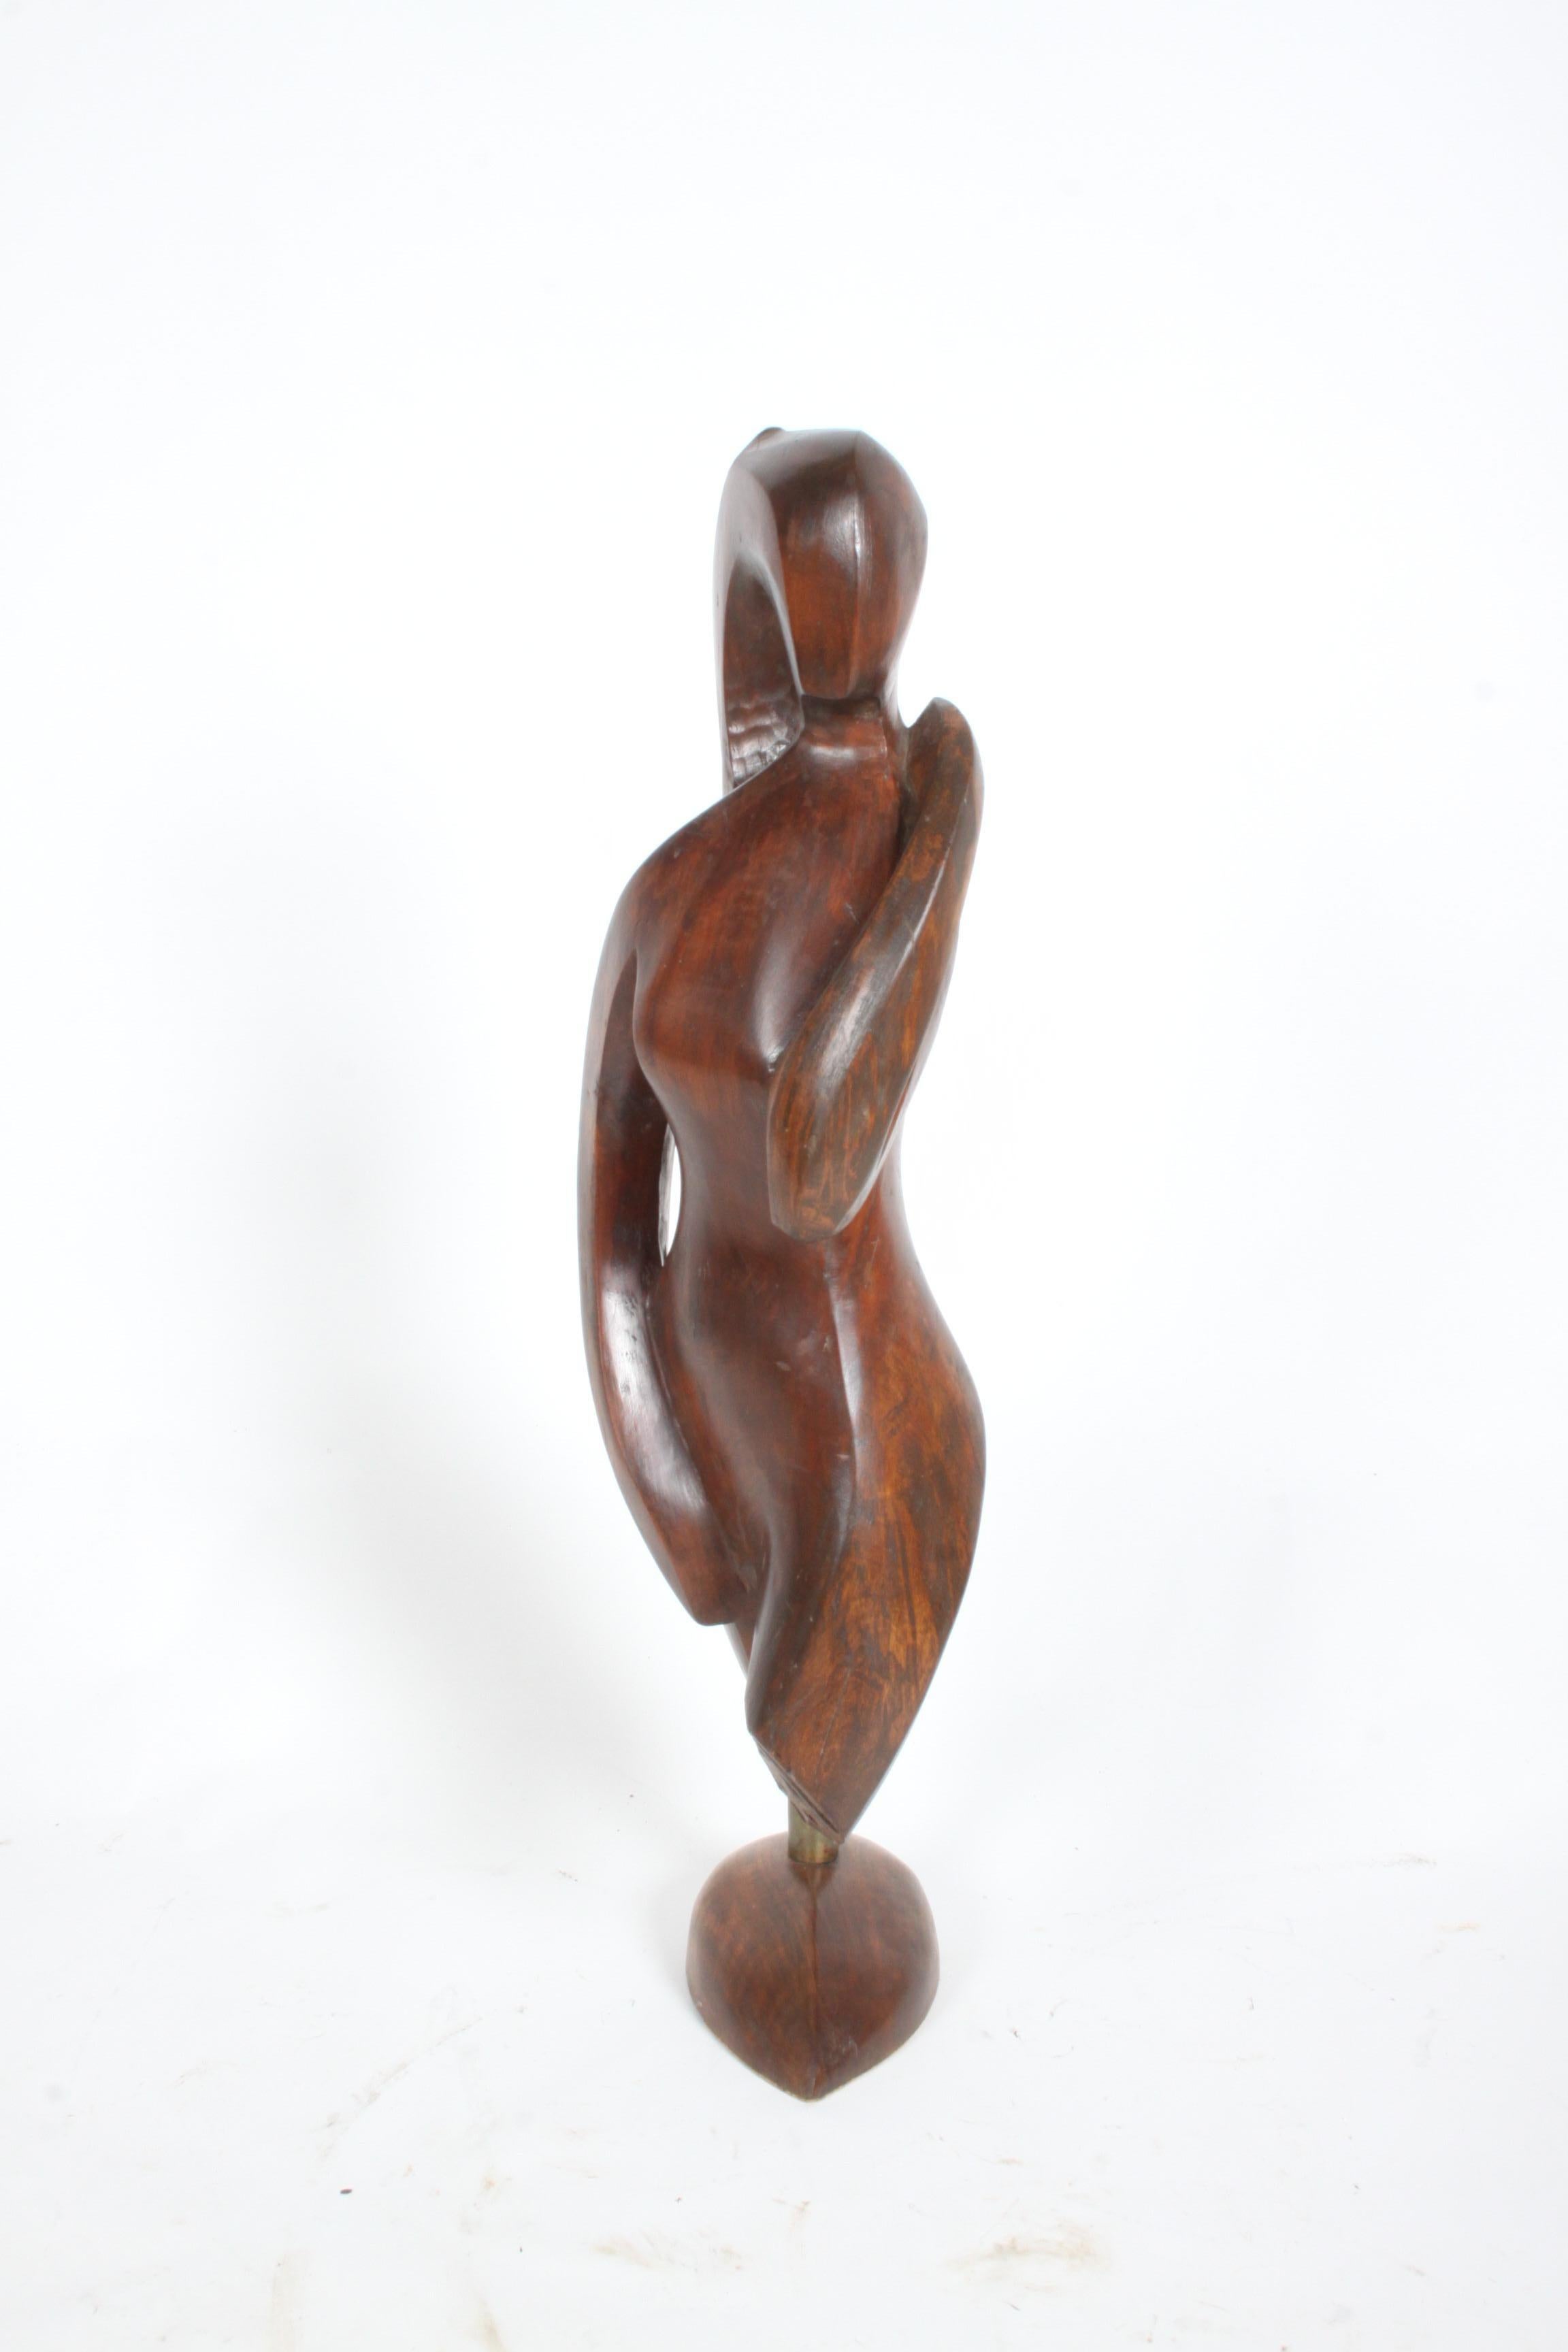 Grande sculpture organique de femme nue en bois sculptée à la main, datant du milieu du siècle dernier, de l'artiste / sculpteur William Conrad Severson, (1924-1999). Une belle œuvre ancienne, signée Wm. C. Severson et daté de 1956. Forme féminine